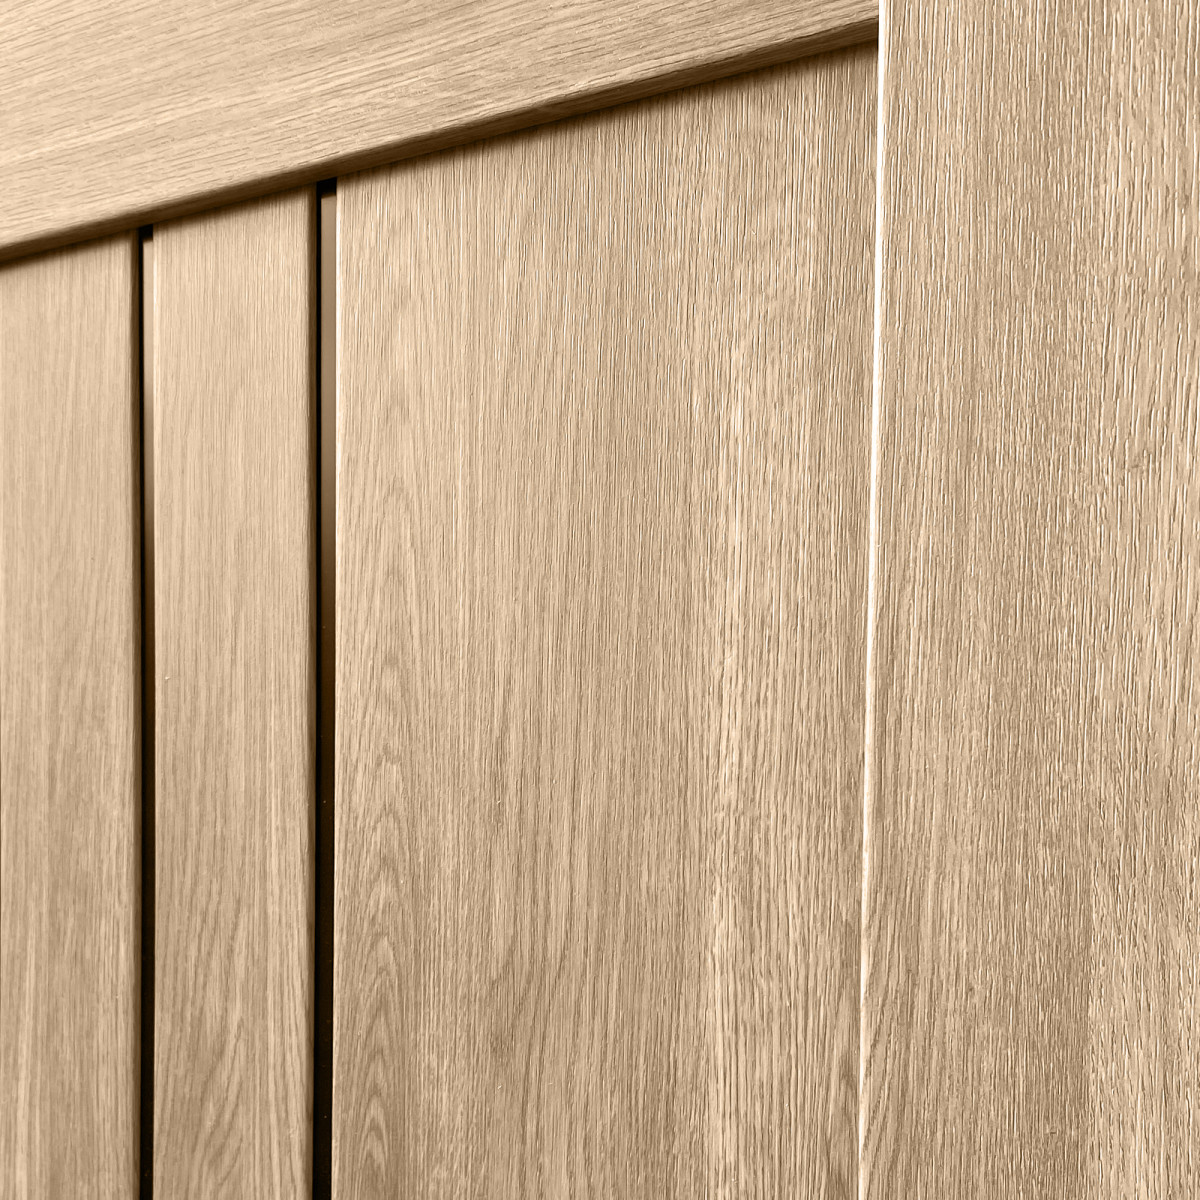 Дверь межкомнатная остеклённая Бергамо 60х200 см с фурнитурой, ПВХ, цвет европейский дуб